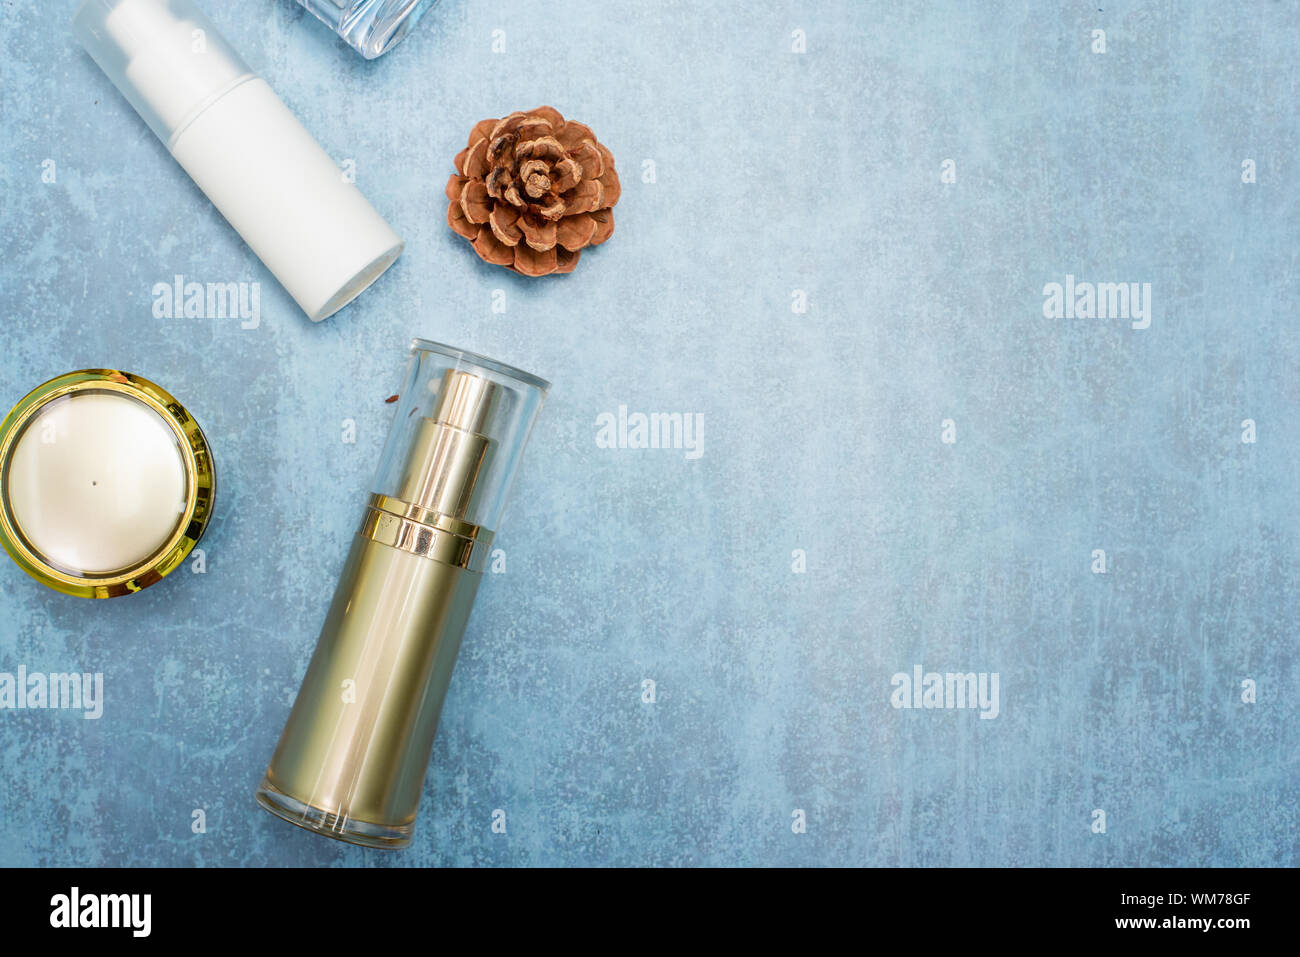 Kosmetisches Erzeugnis und tropische Blätter auf Konzert Hintergrund, kosmetisches Erzeugnis Stockfoto